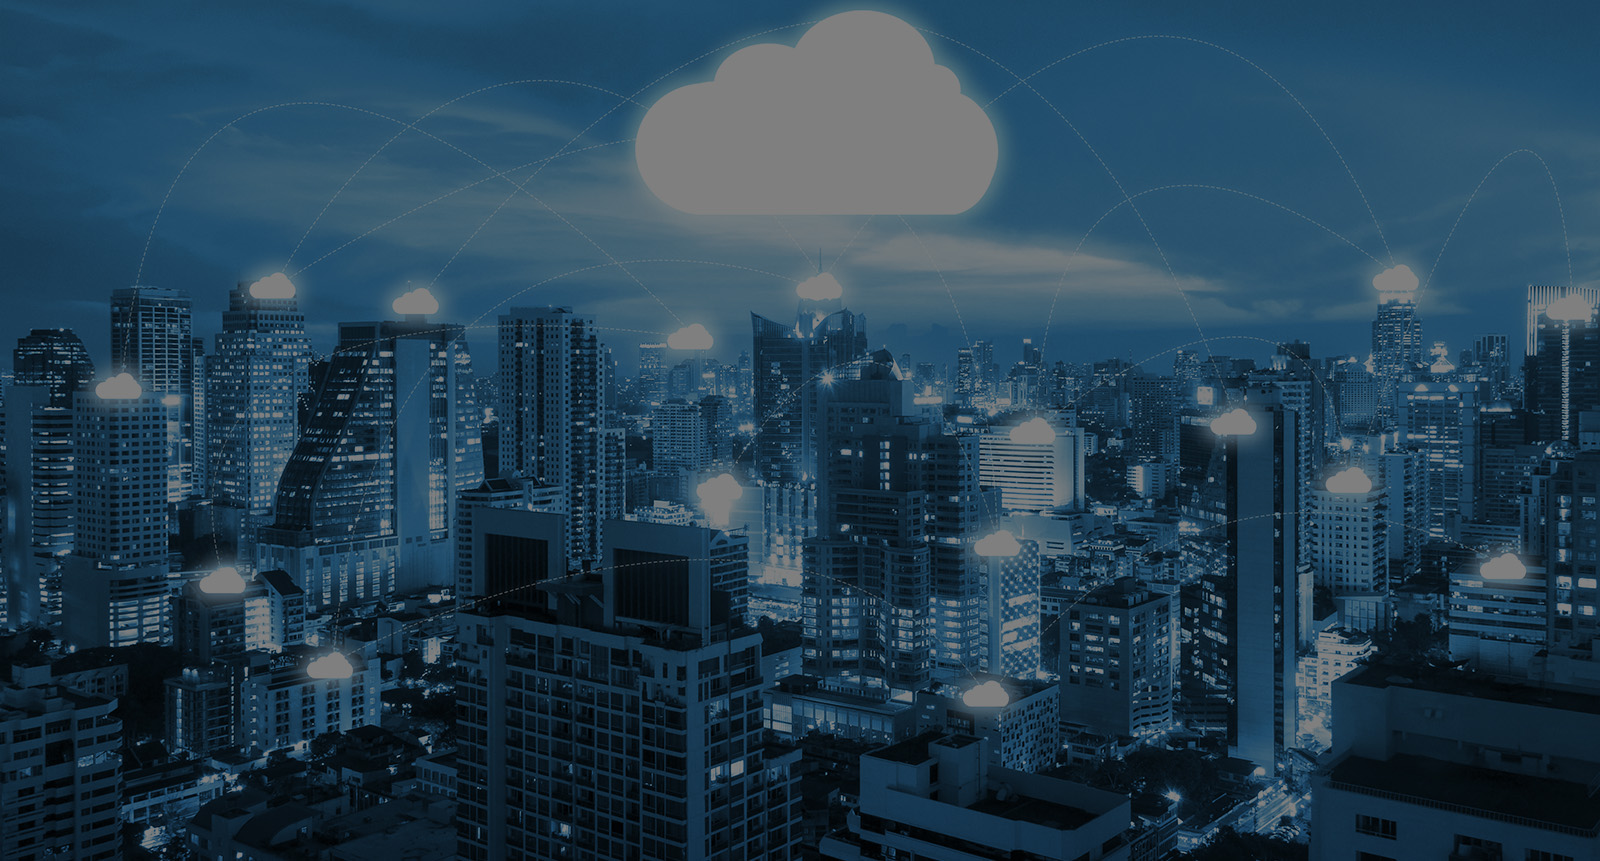 Migrating to Cloud Platform for EHR Vendor